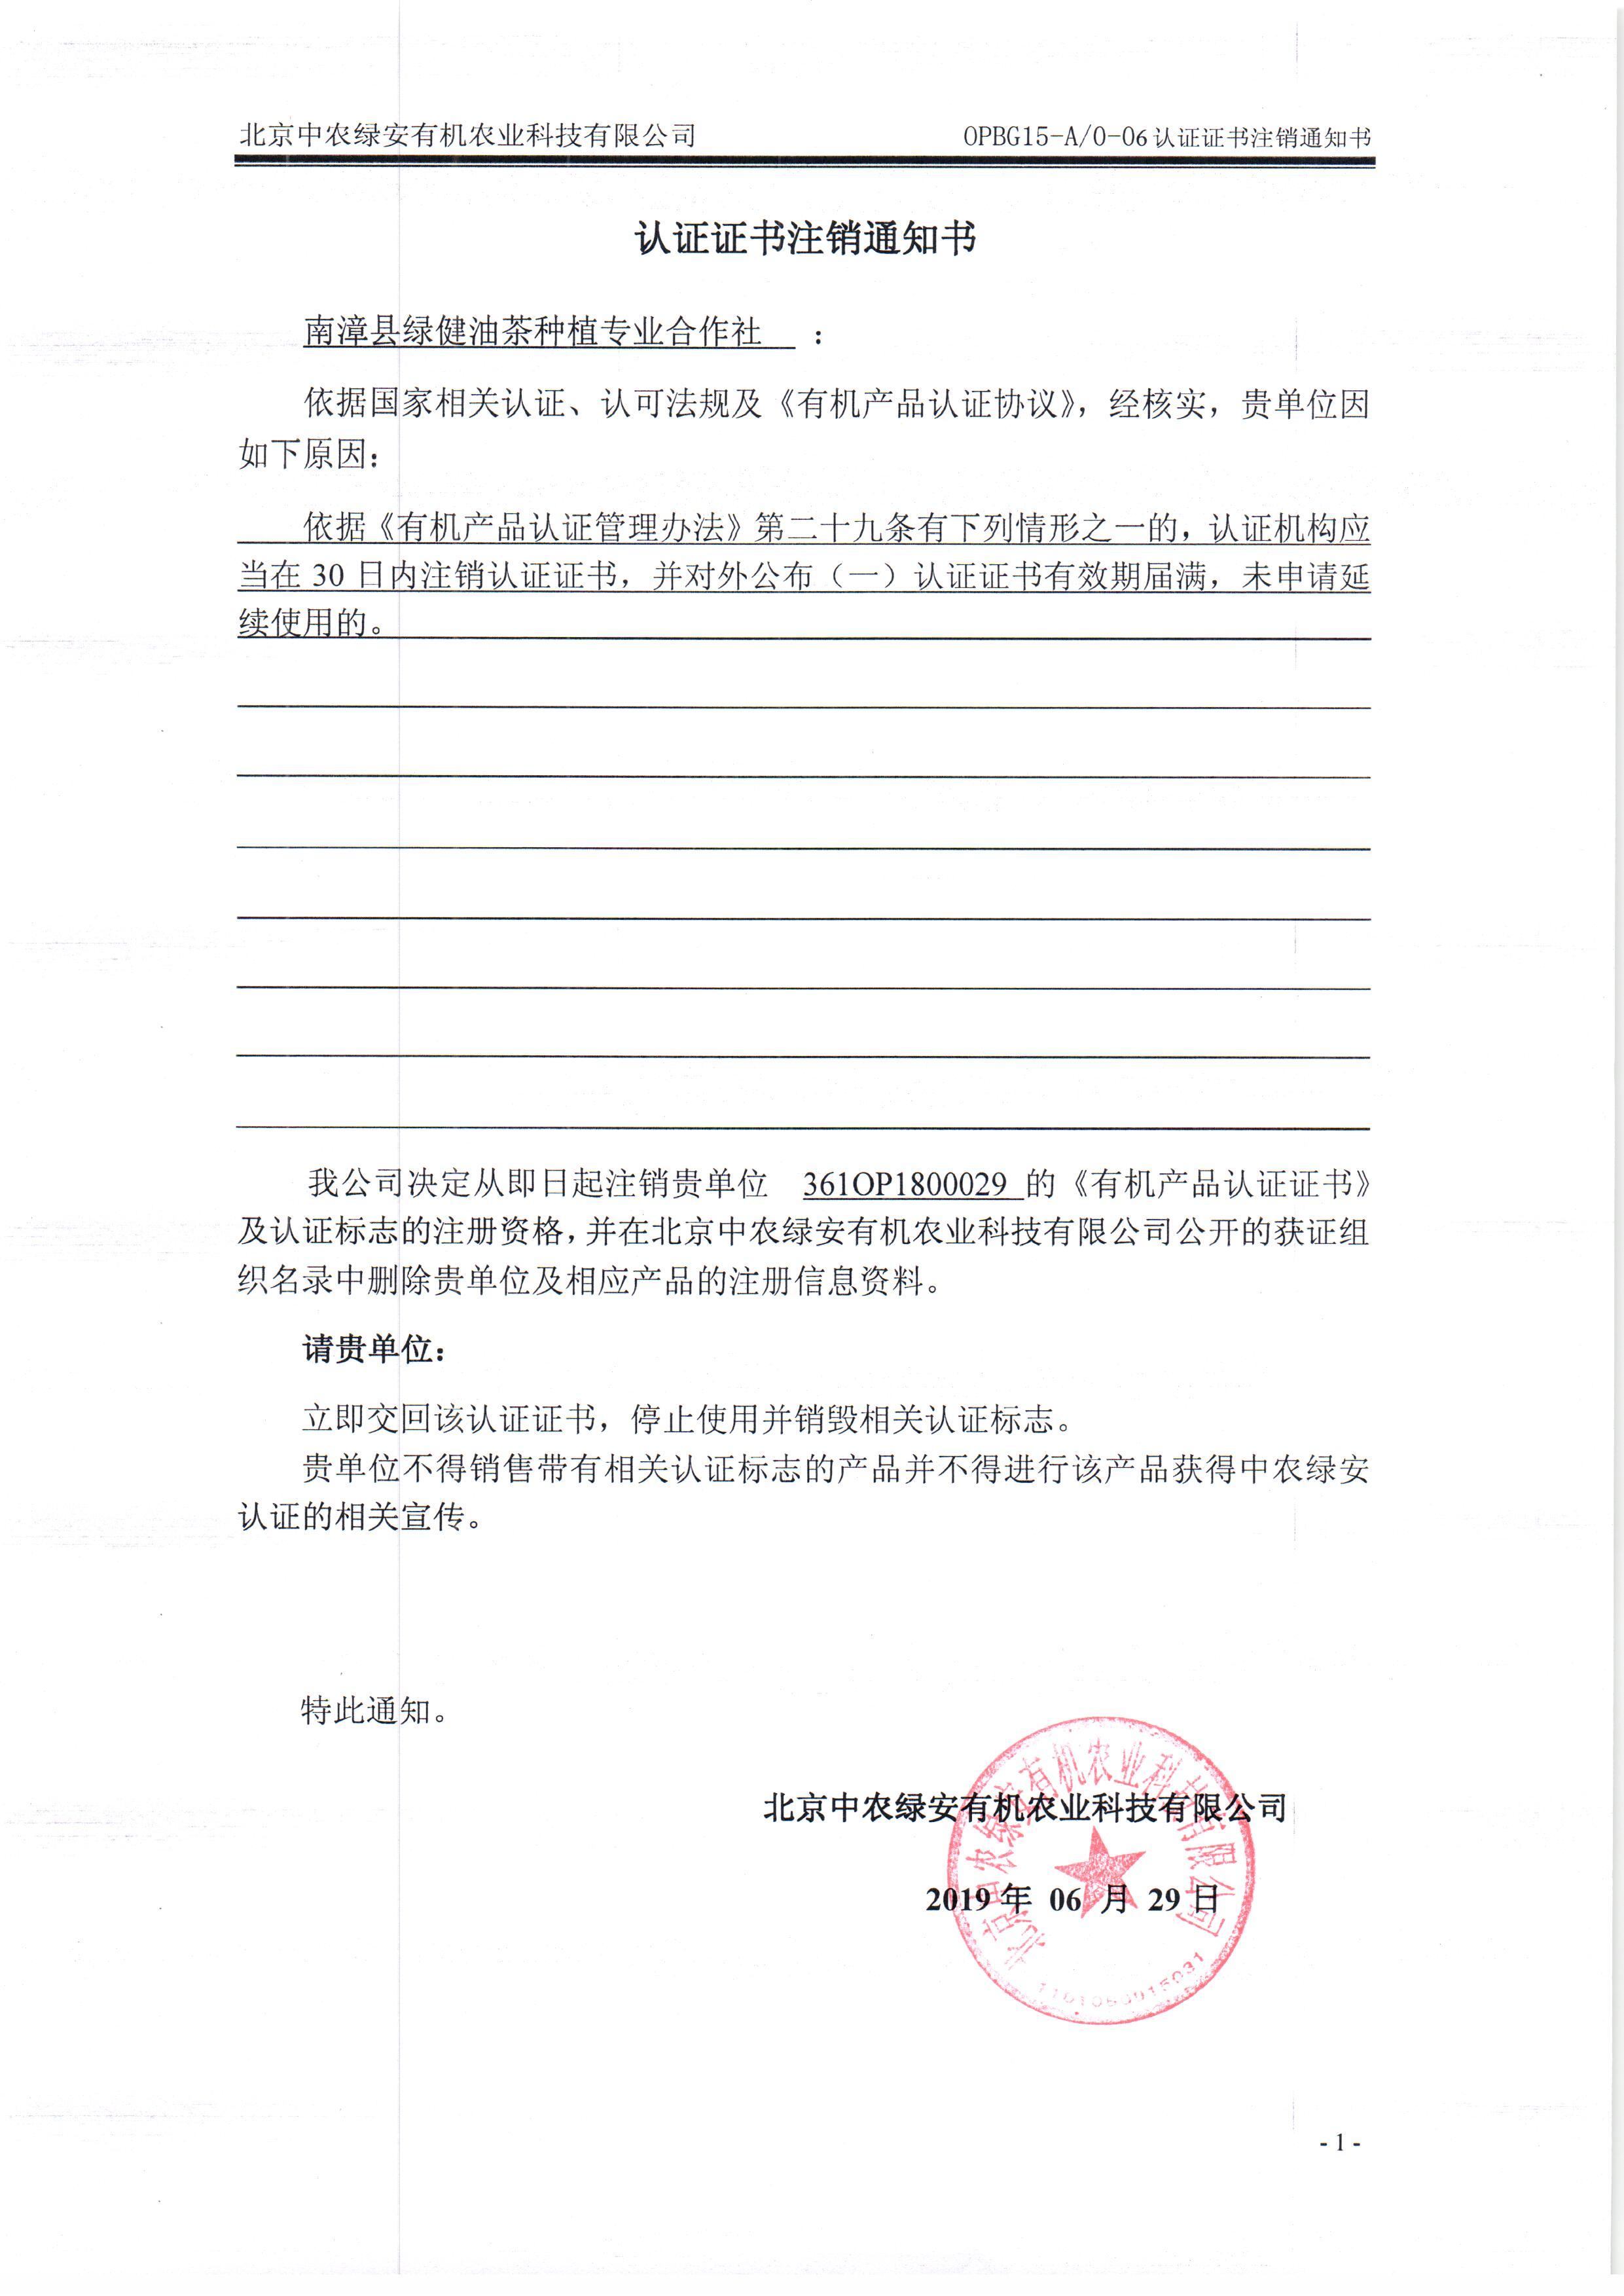 南漳县绿健油茶种植专业合作社证书注销通知书